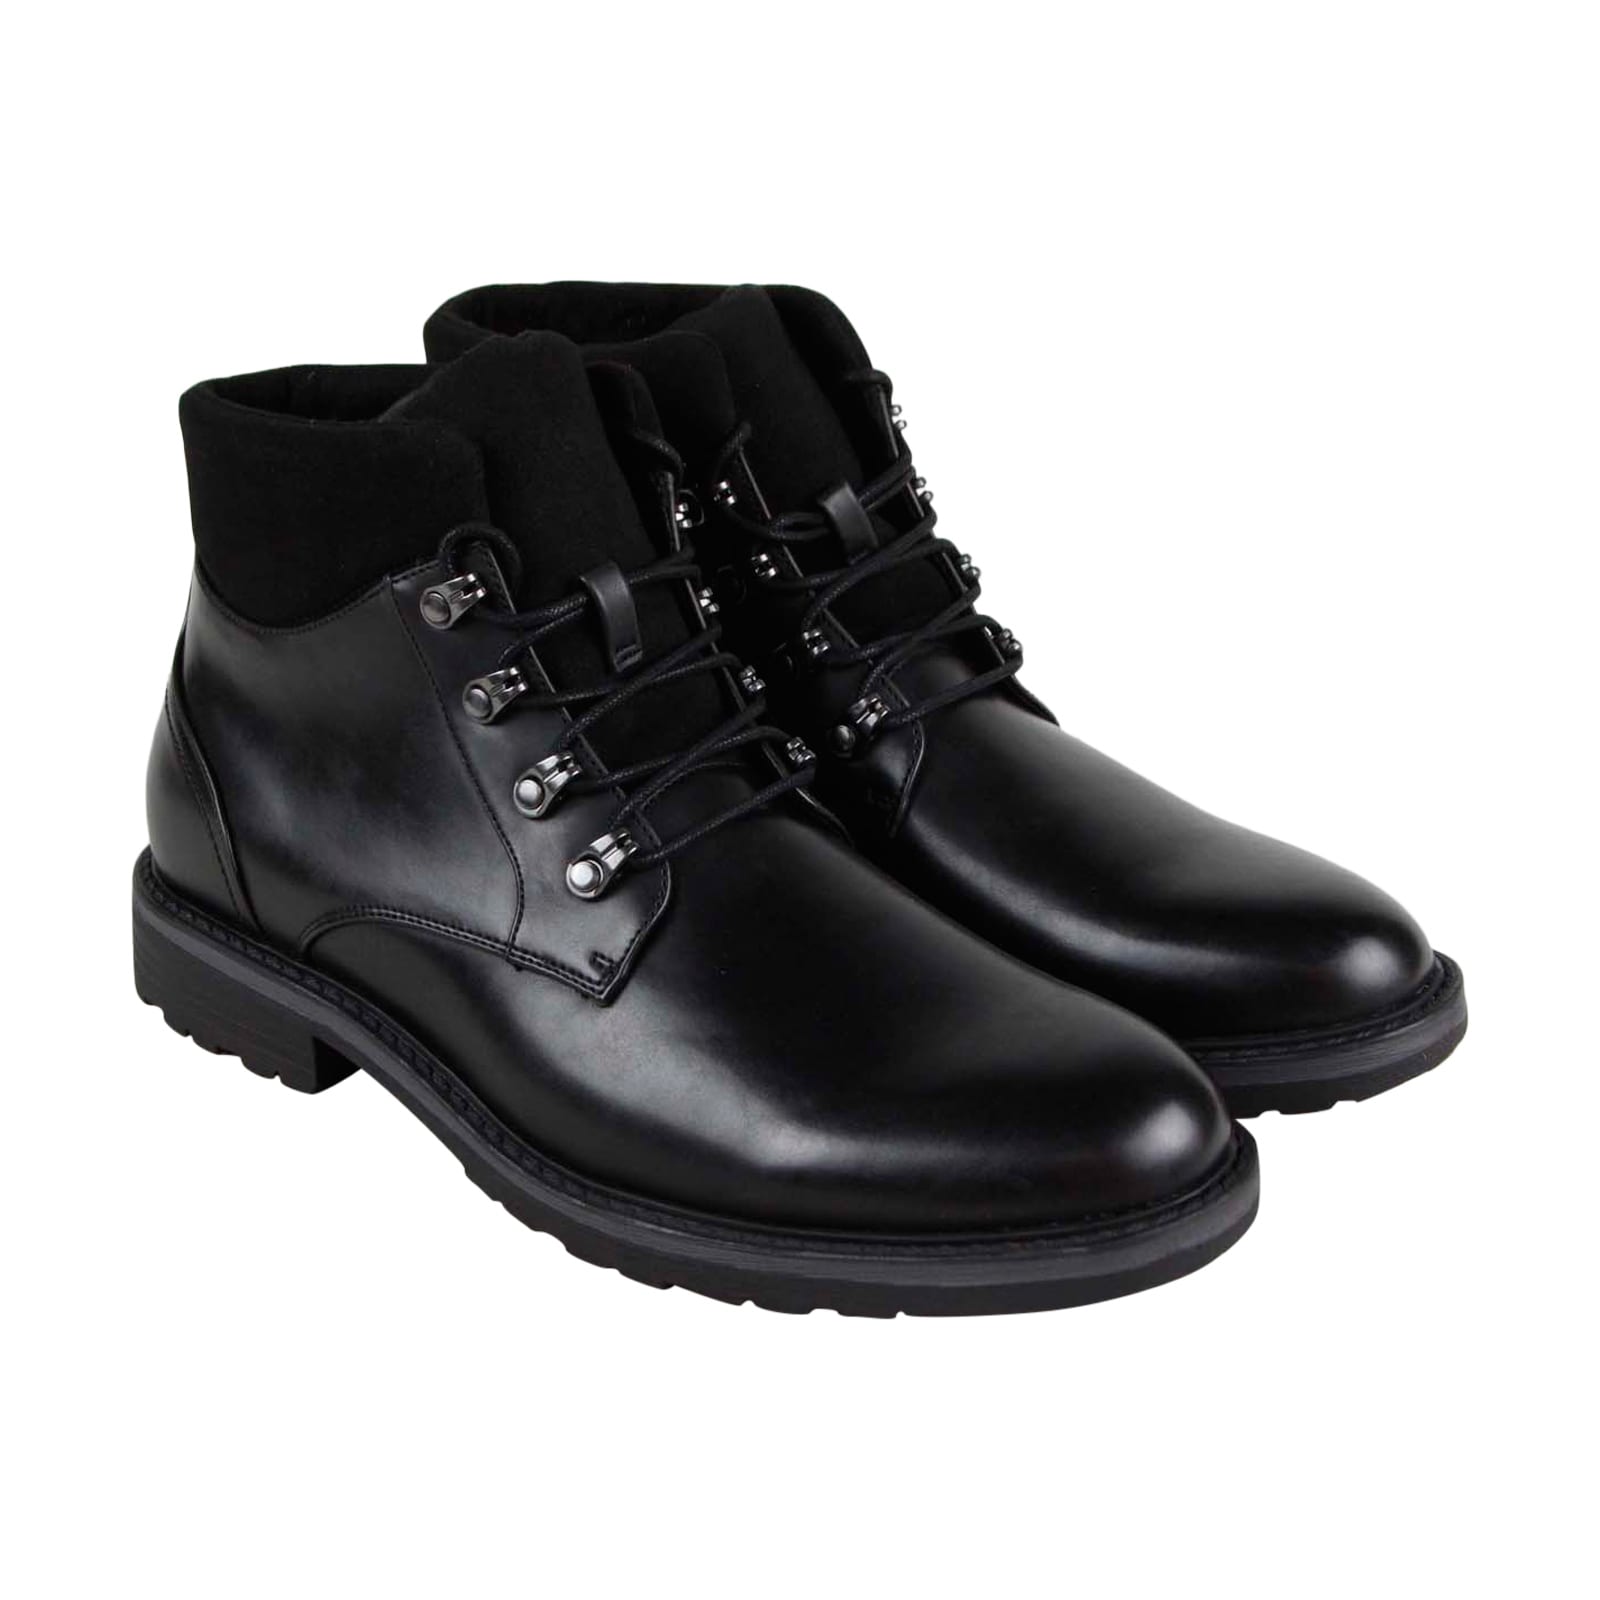 mens black casual dress boots